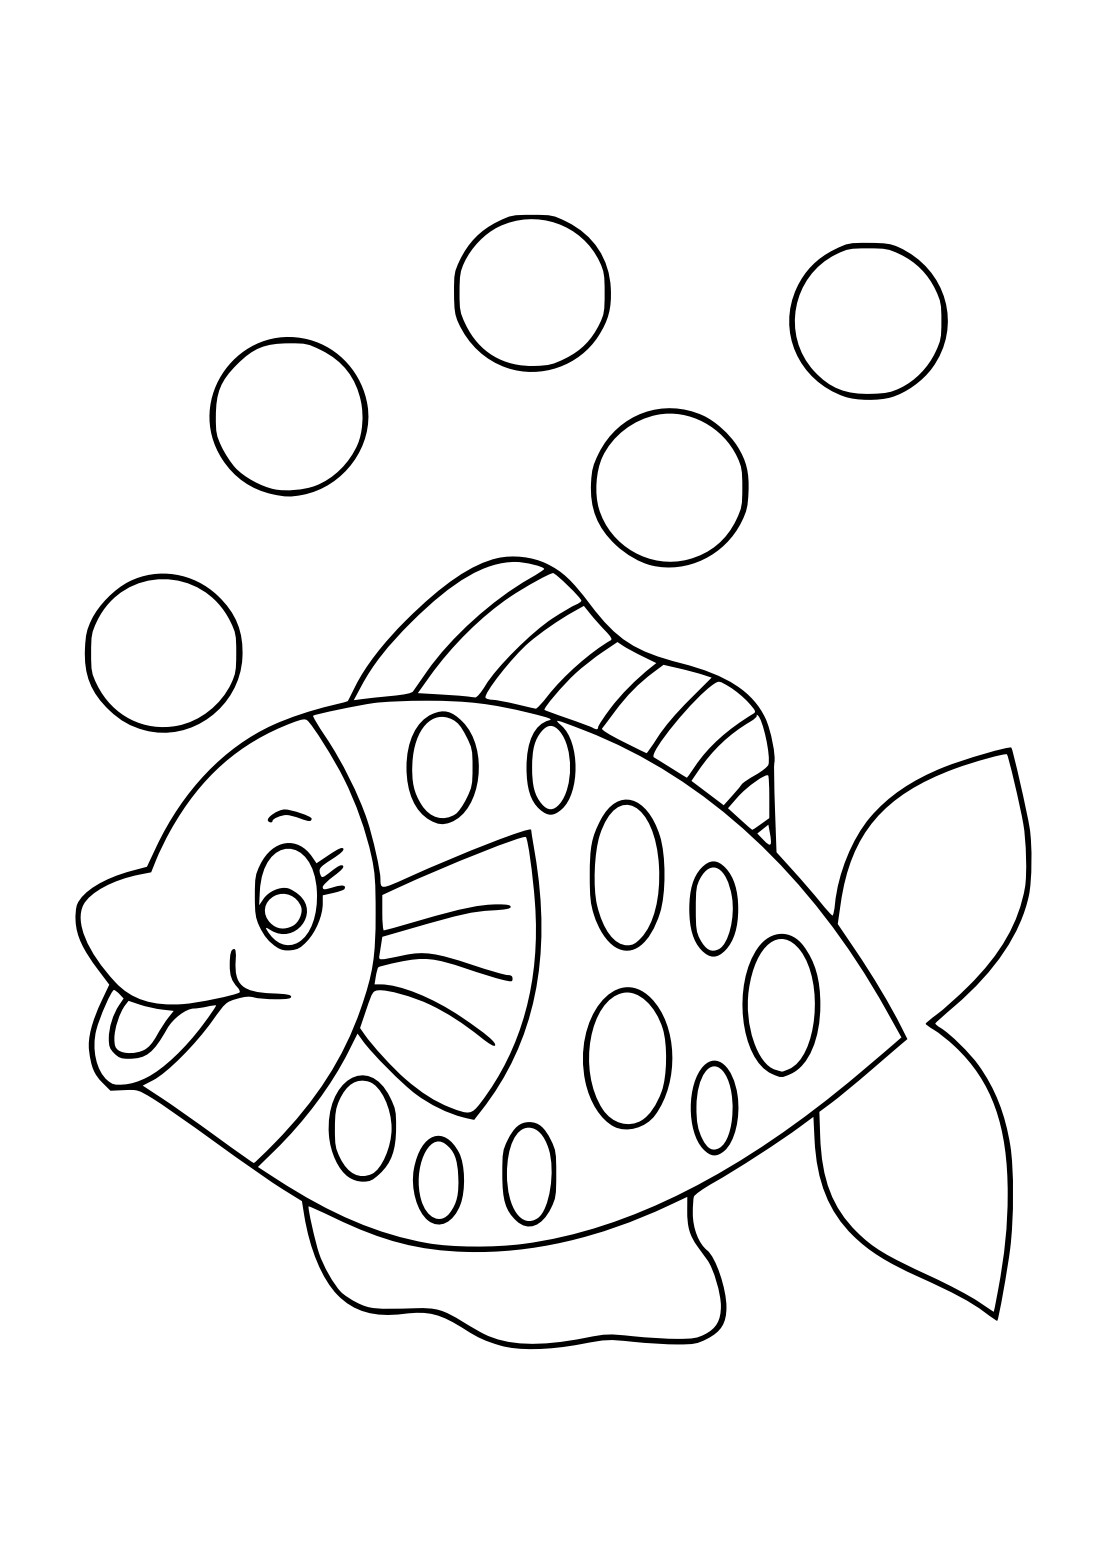 Пластилинография средняя группа шаблоны. Раскраска рыбка. Рыбка раскраска для детей. Рыбка для раскрашивания для детей. Трафарет "рыбки".